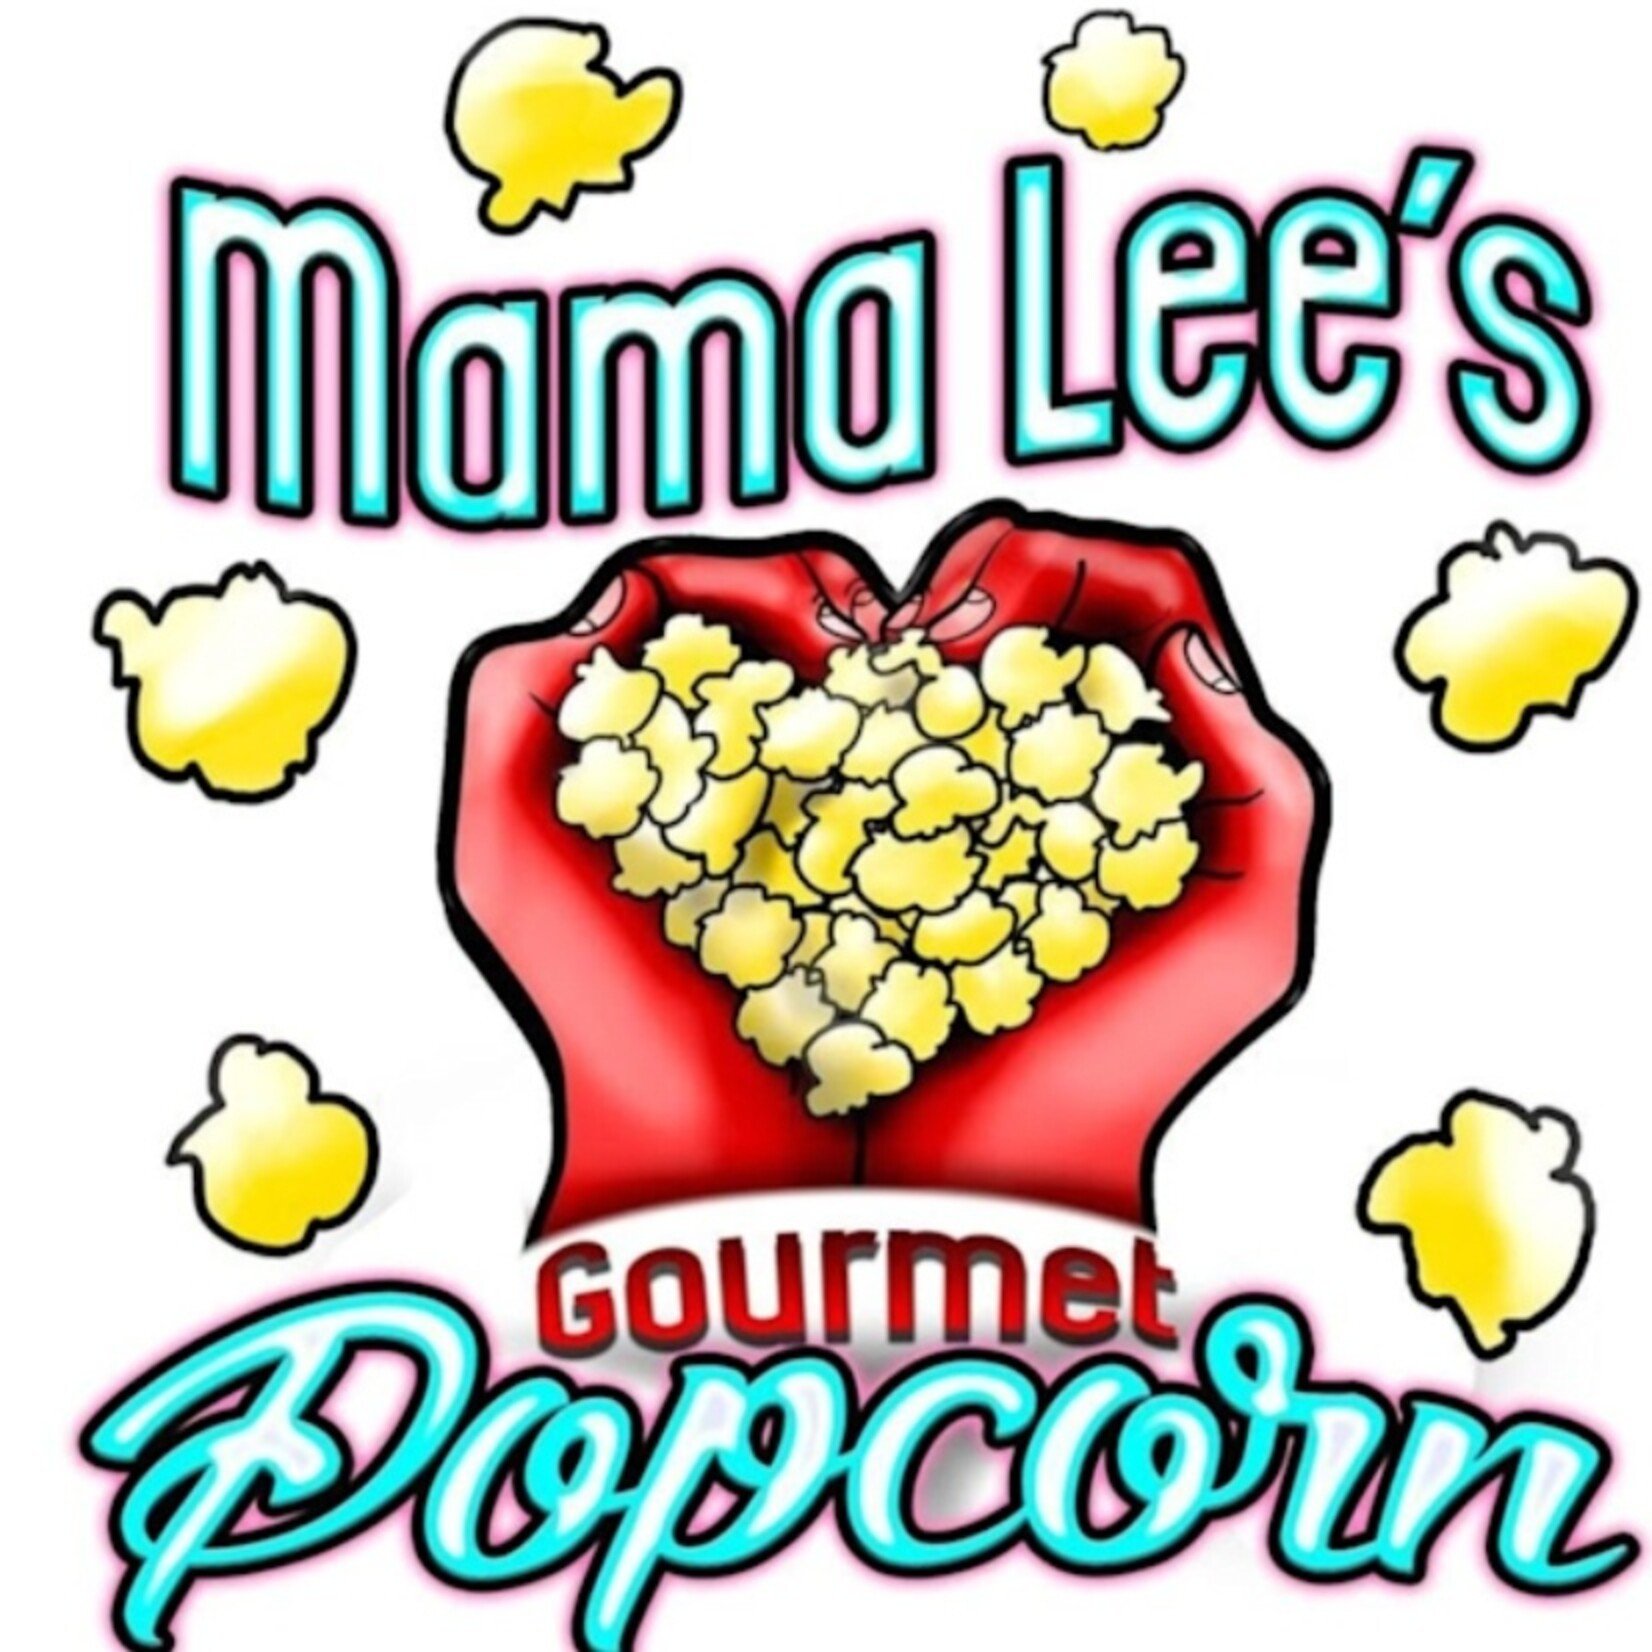 Mama Lee's Gourmet Popcorn-Elgin Mama Lee's Gourmet Popcorn-Elgin $5.99 Medium size bag popcorn